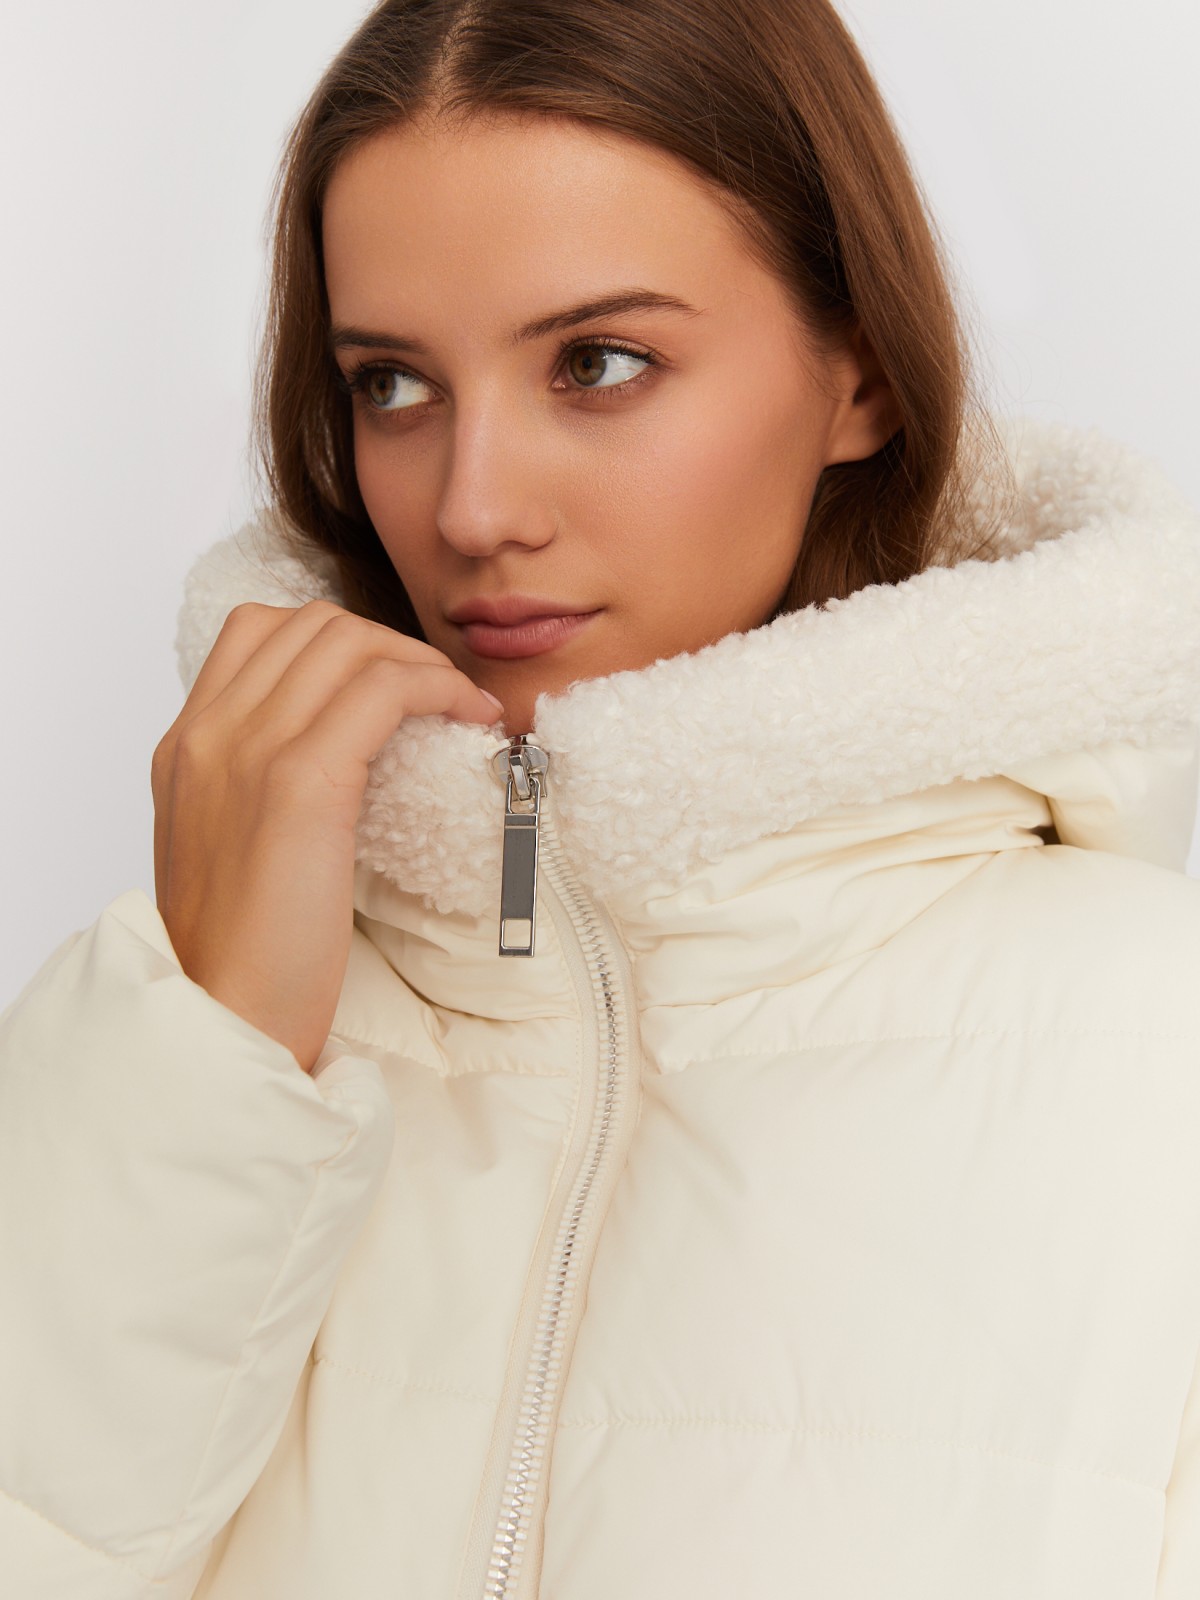 Тёплая куртка-пальто с капюшоном и отделкой из экомеха zolla 022425276044, цвет молоко, размер M - фото 3